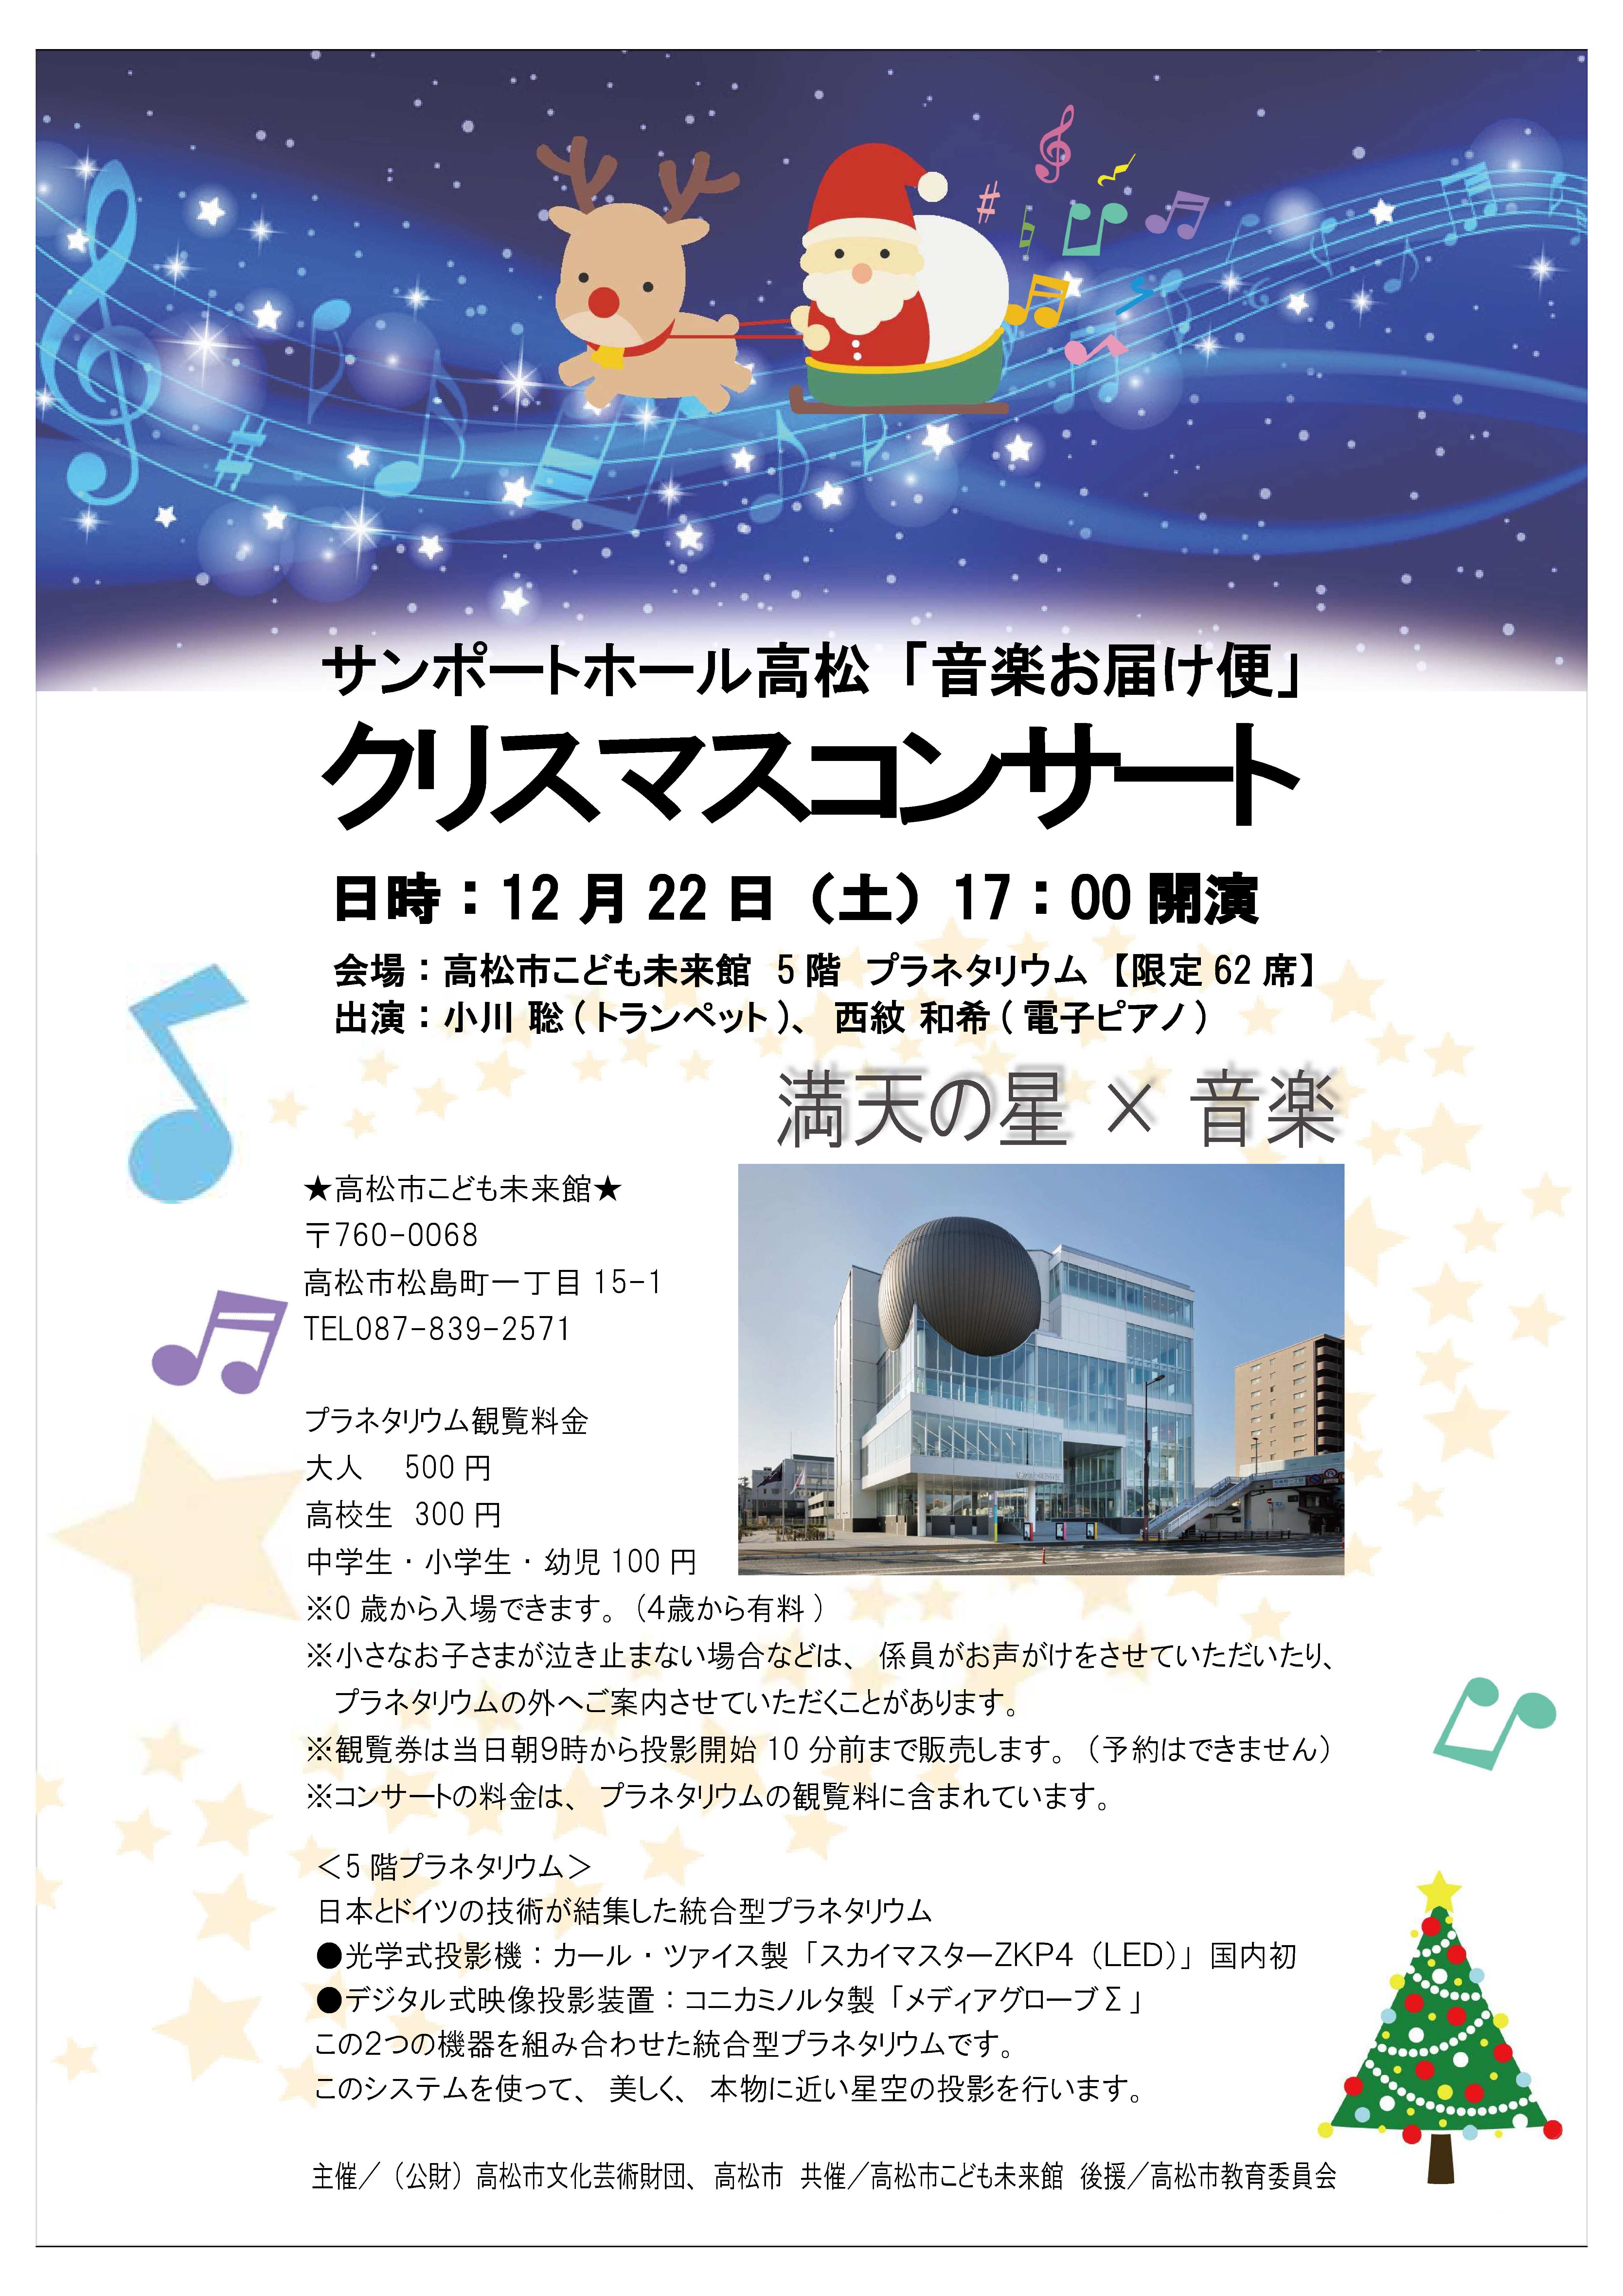 クリスマスコンサート 主催イベント サンポートホール高松